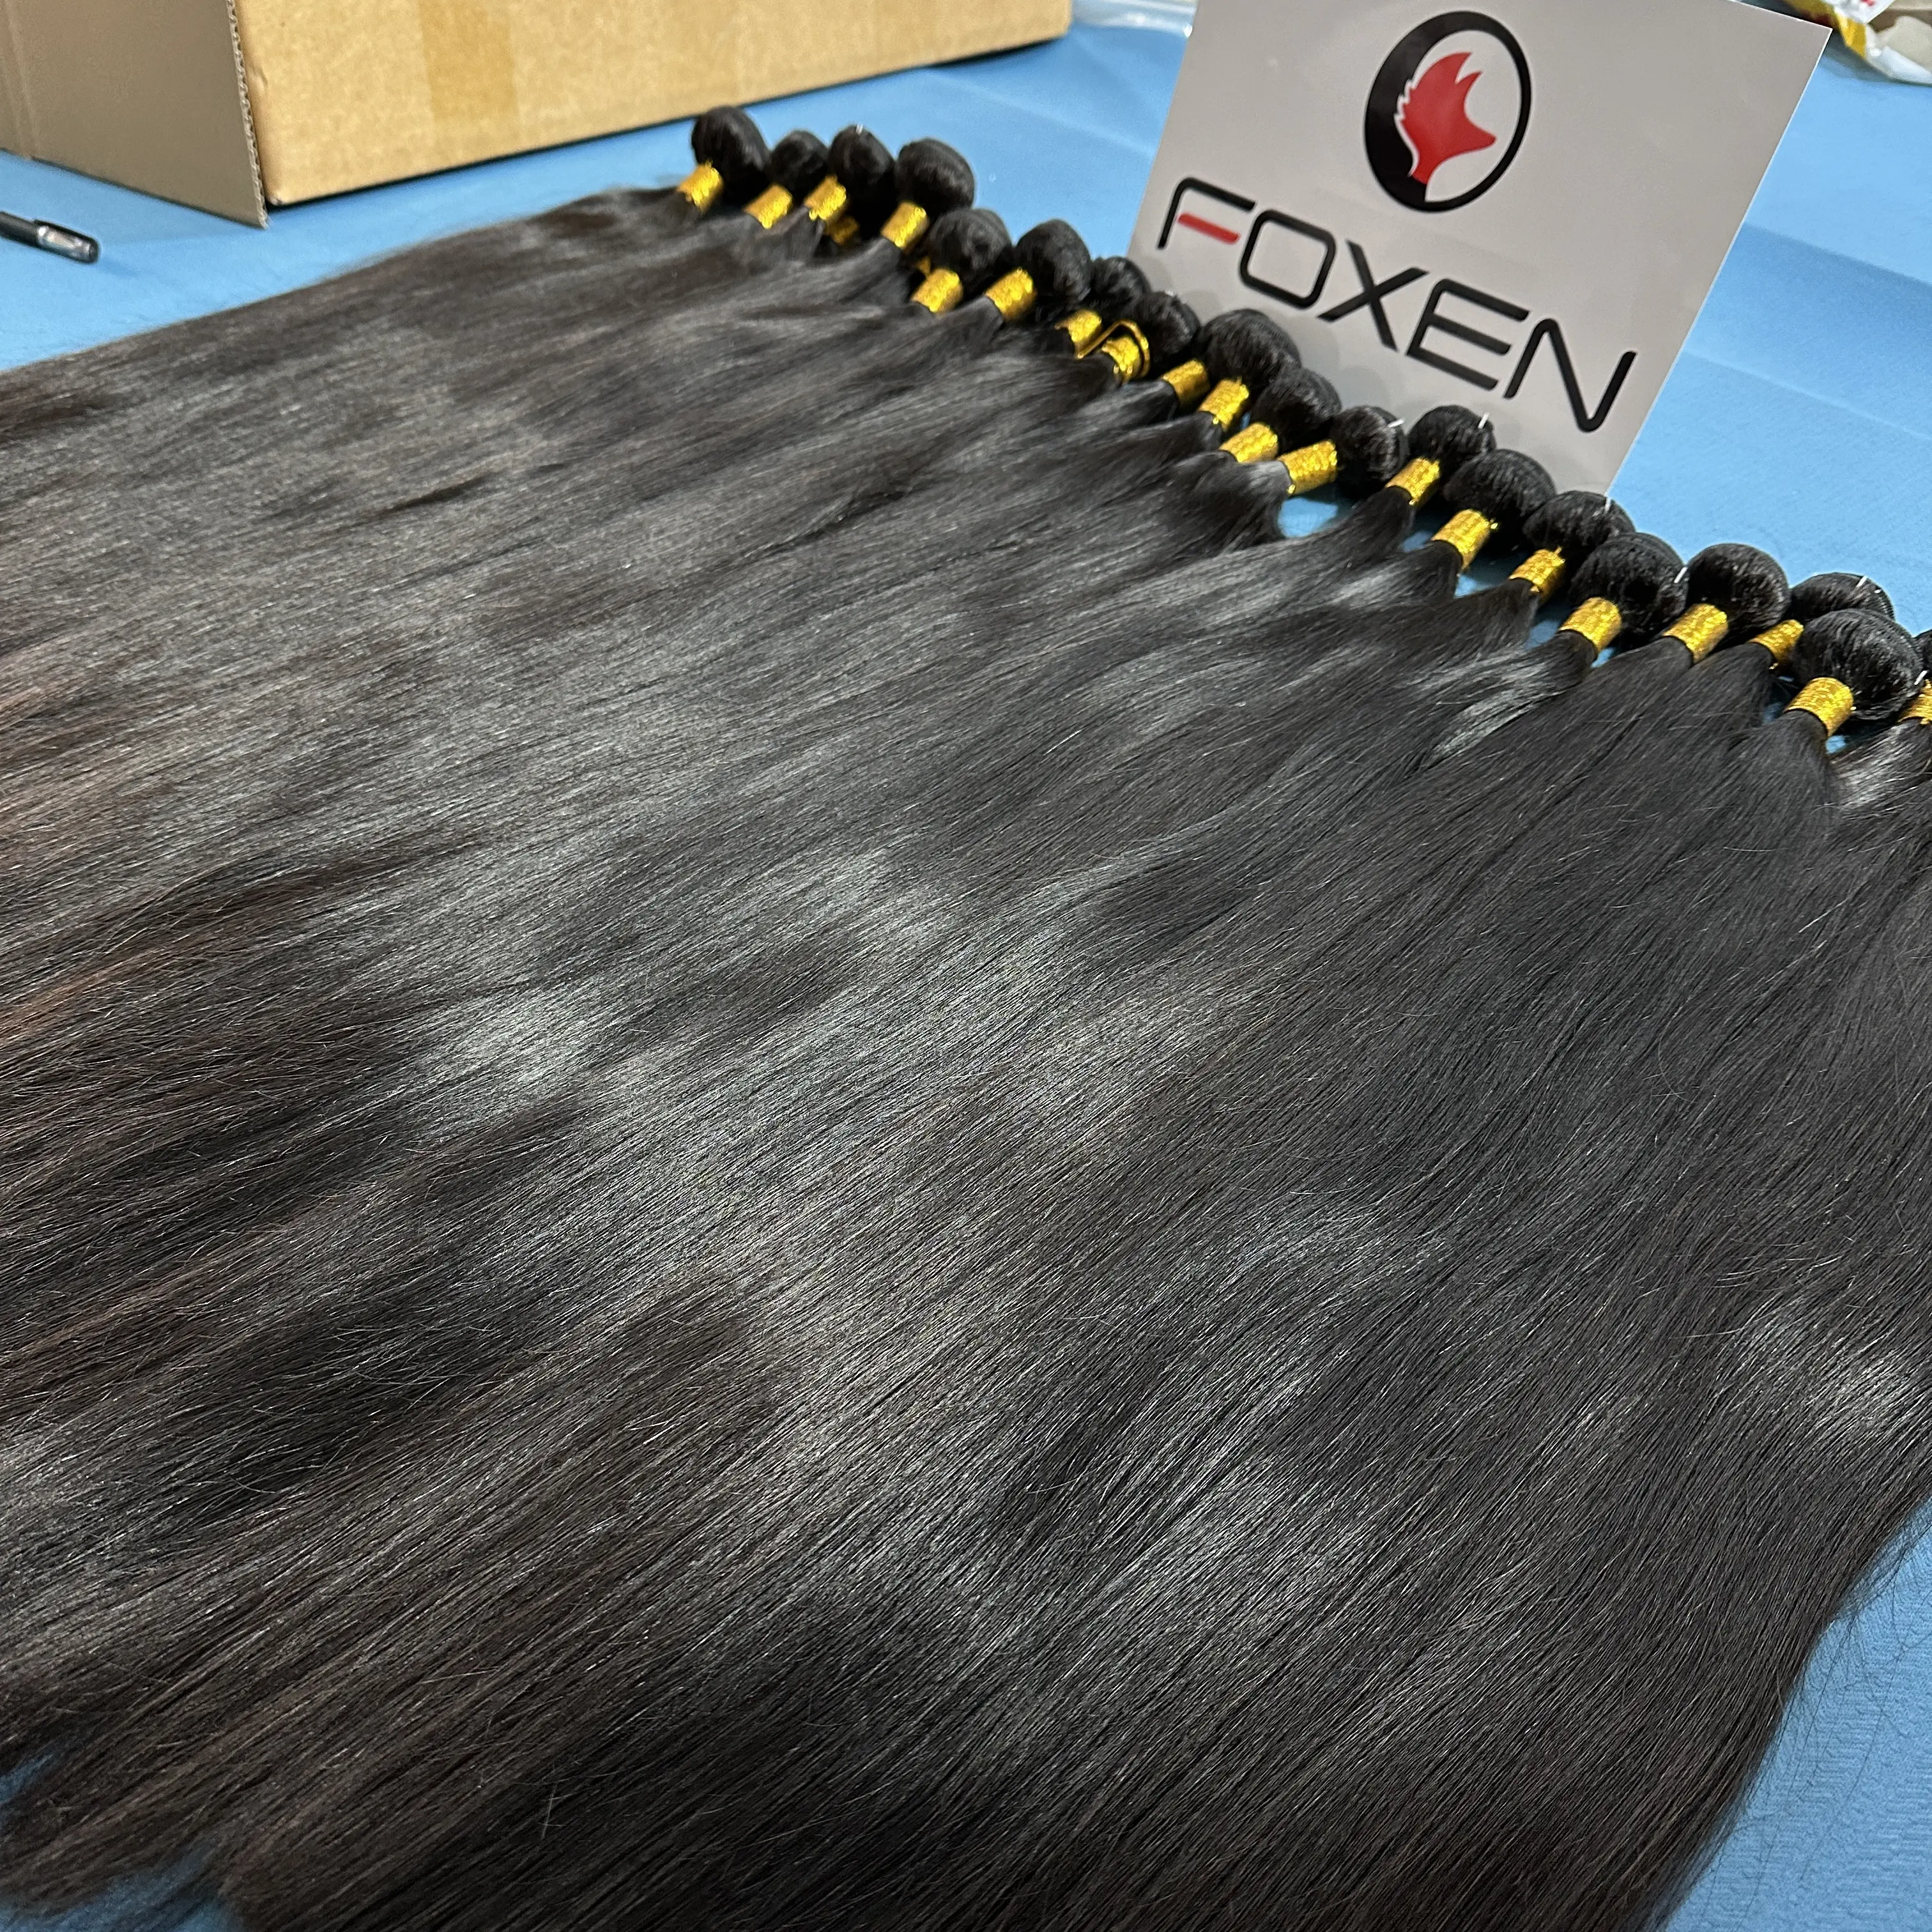 भ्रूण मानव बाल विस्तार विक्रेता कुंवारी क्यूटिकल वाले बाल बंडल 12 ए ग्रेड वर्जिन मानव बाल बंडल बंद के साथ